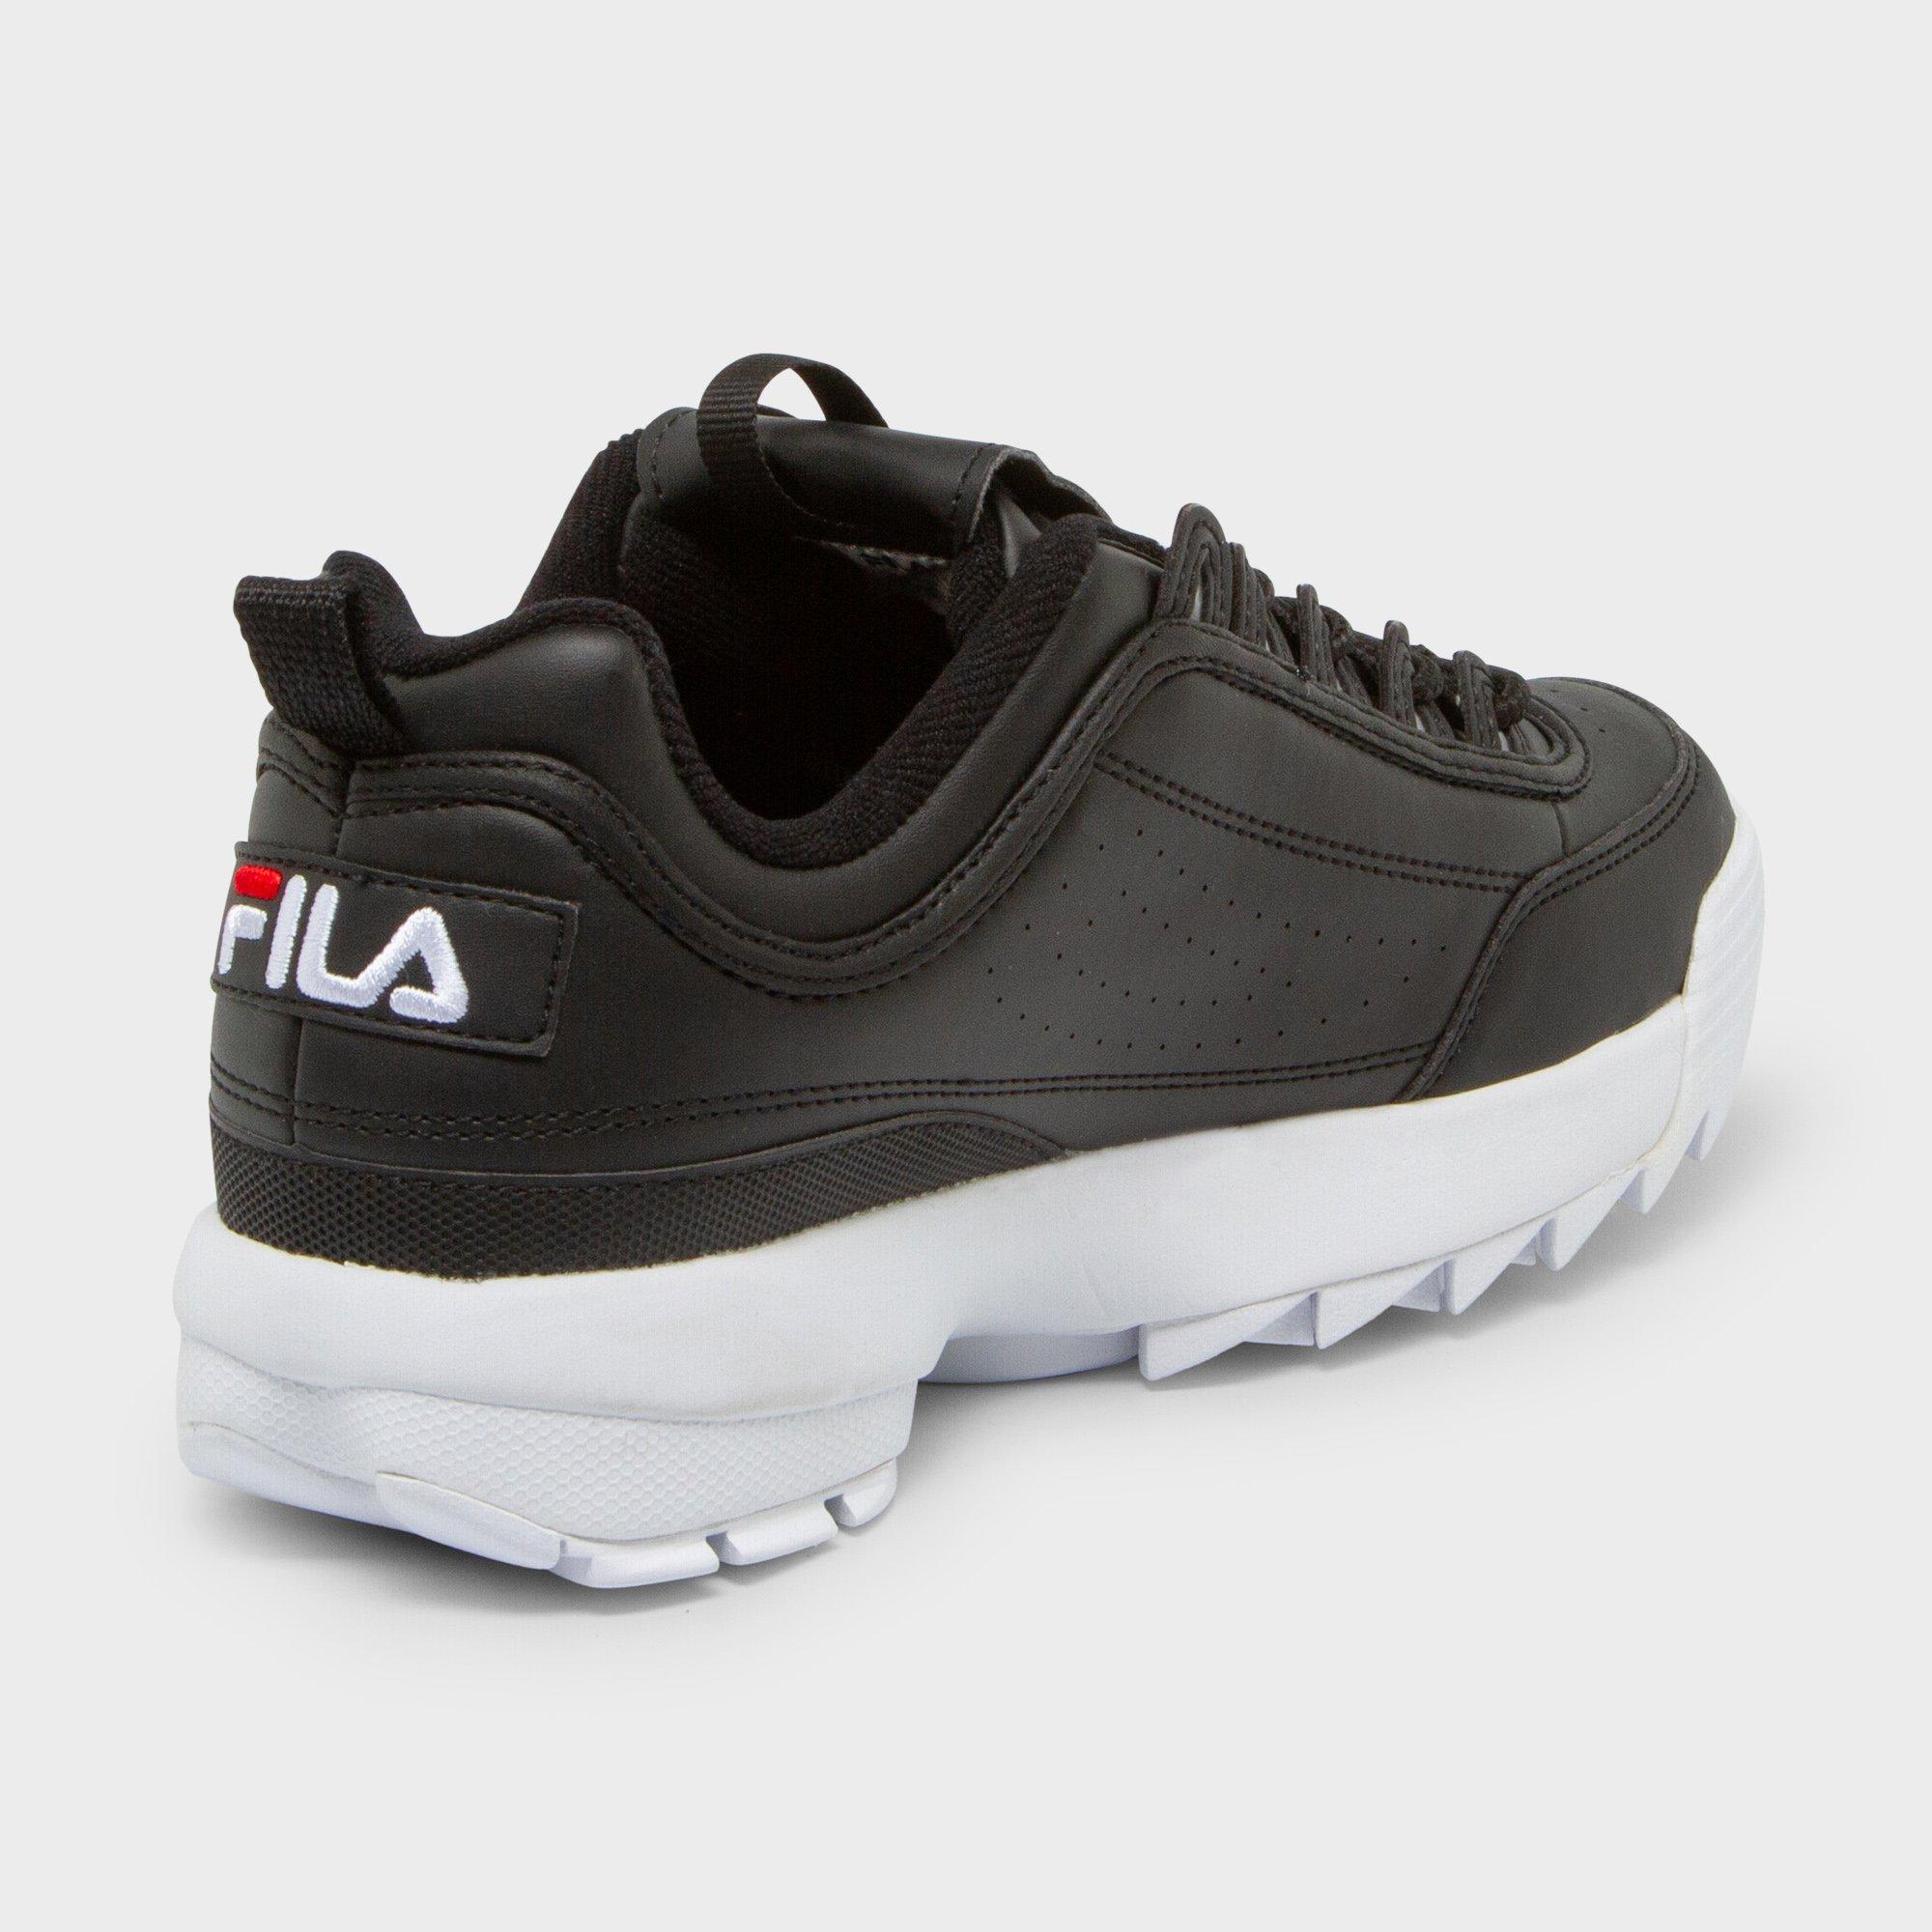 FILA Disruptor Low Sneakers, Low Top 